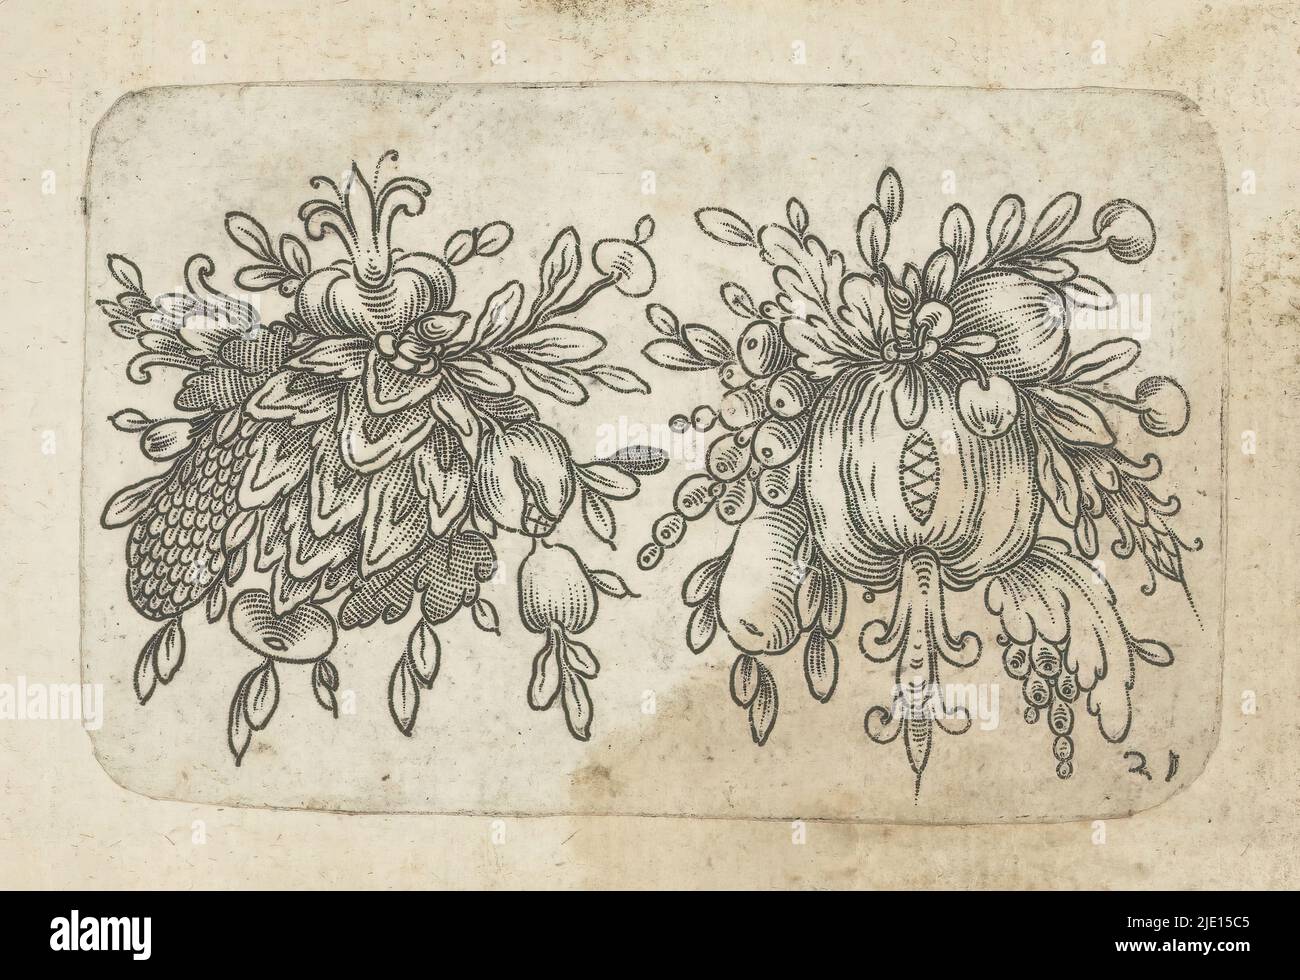 Due mazzi di frutta, ornamenti con cherubini e mazzi di frutta (titolo della serie), due mazzi di frutta. Numerato in basso a destra: 21. La stampa fa parte di un album., tipografia: anonymous, 1601 - 1650, carta, incisione, altezza 59 mm x larghezza 92 mm Foto Stock